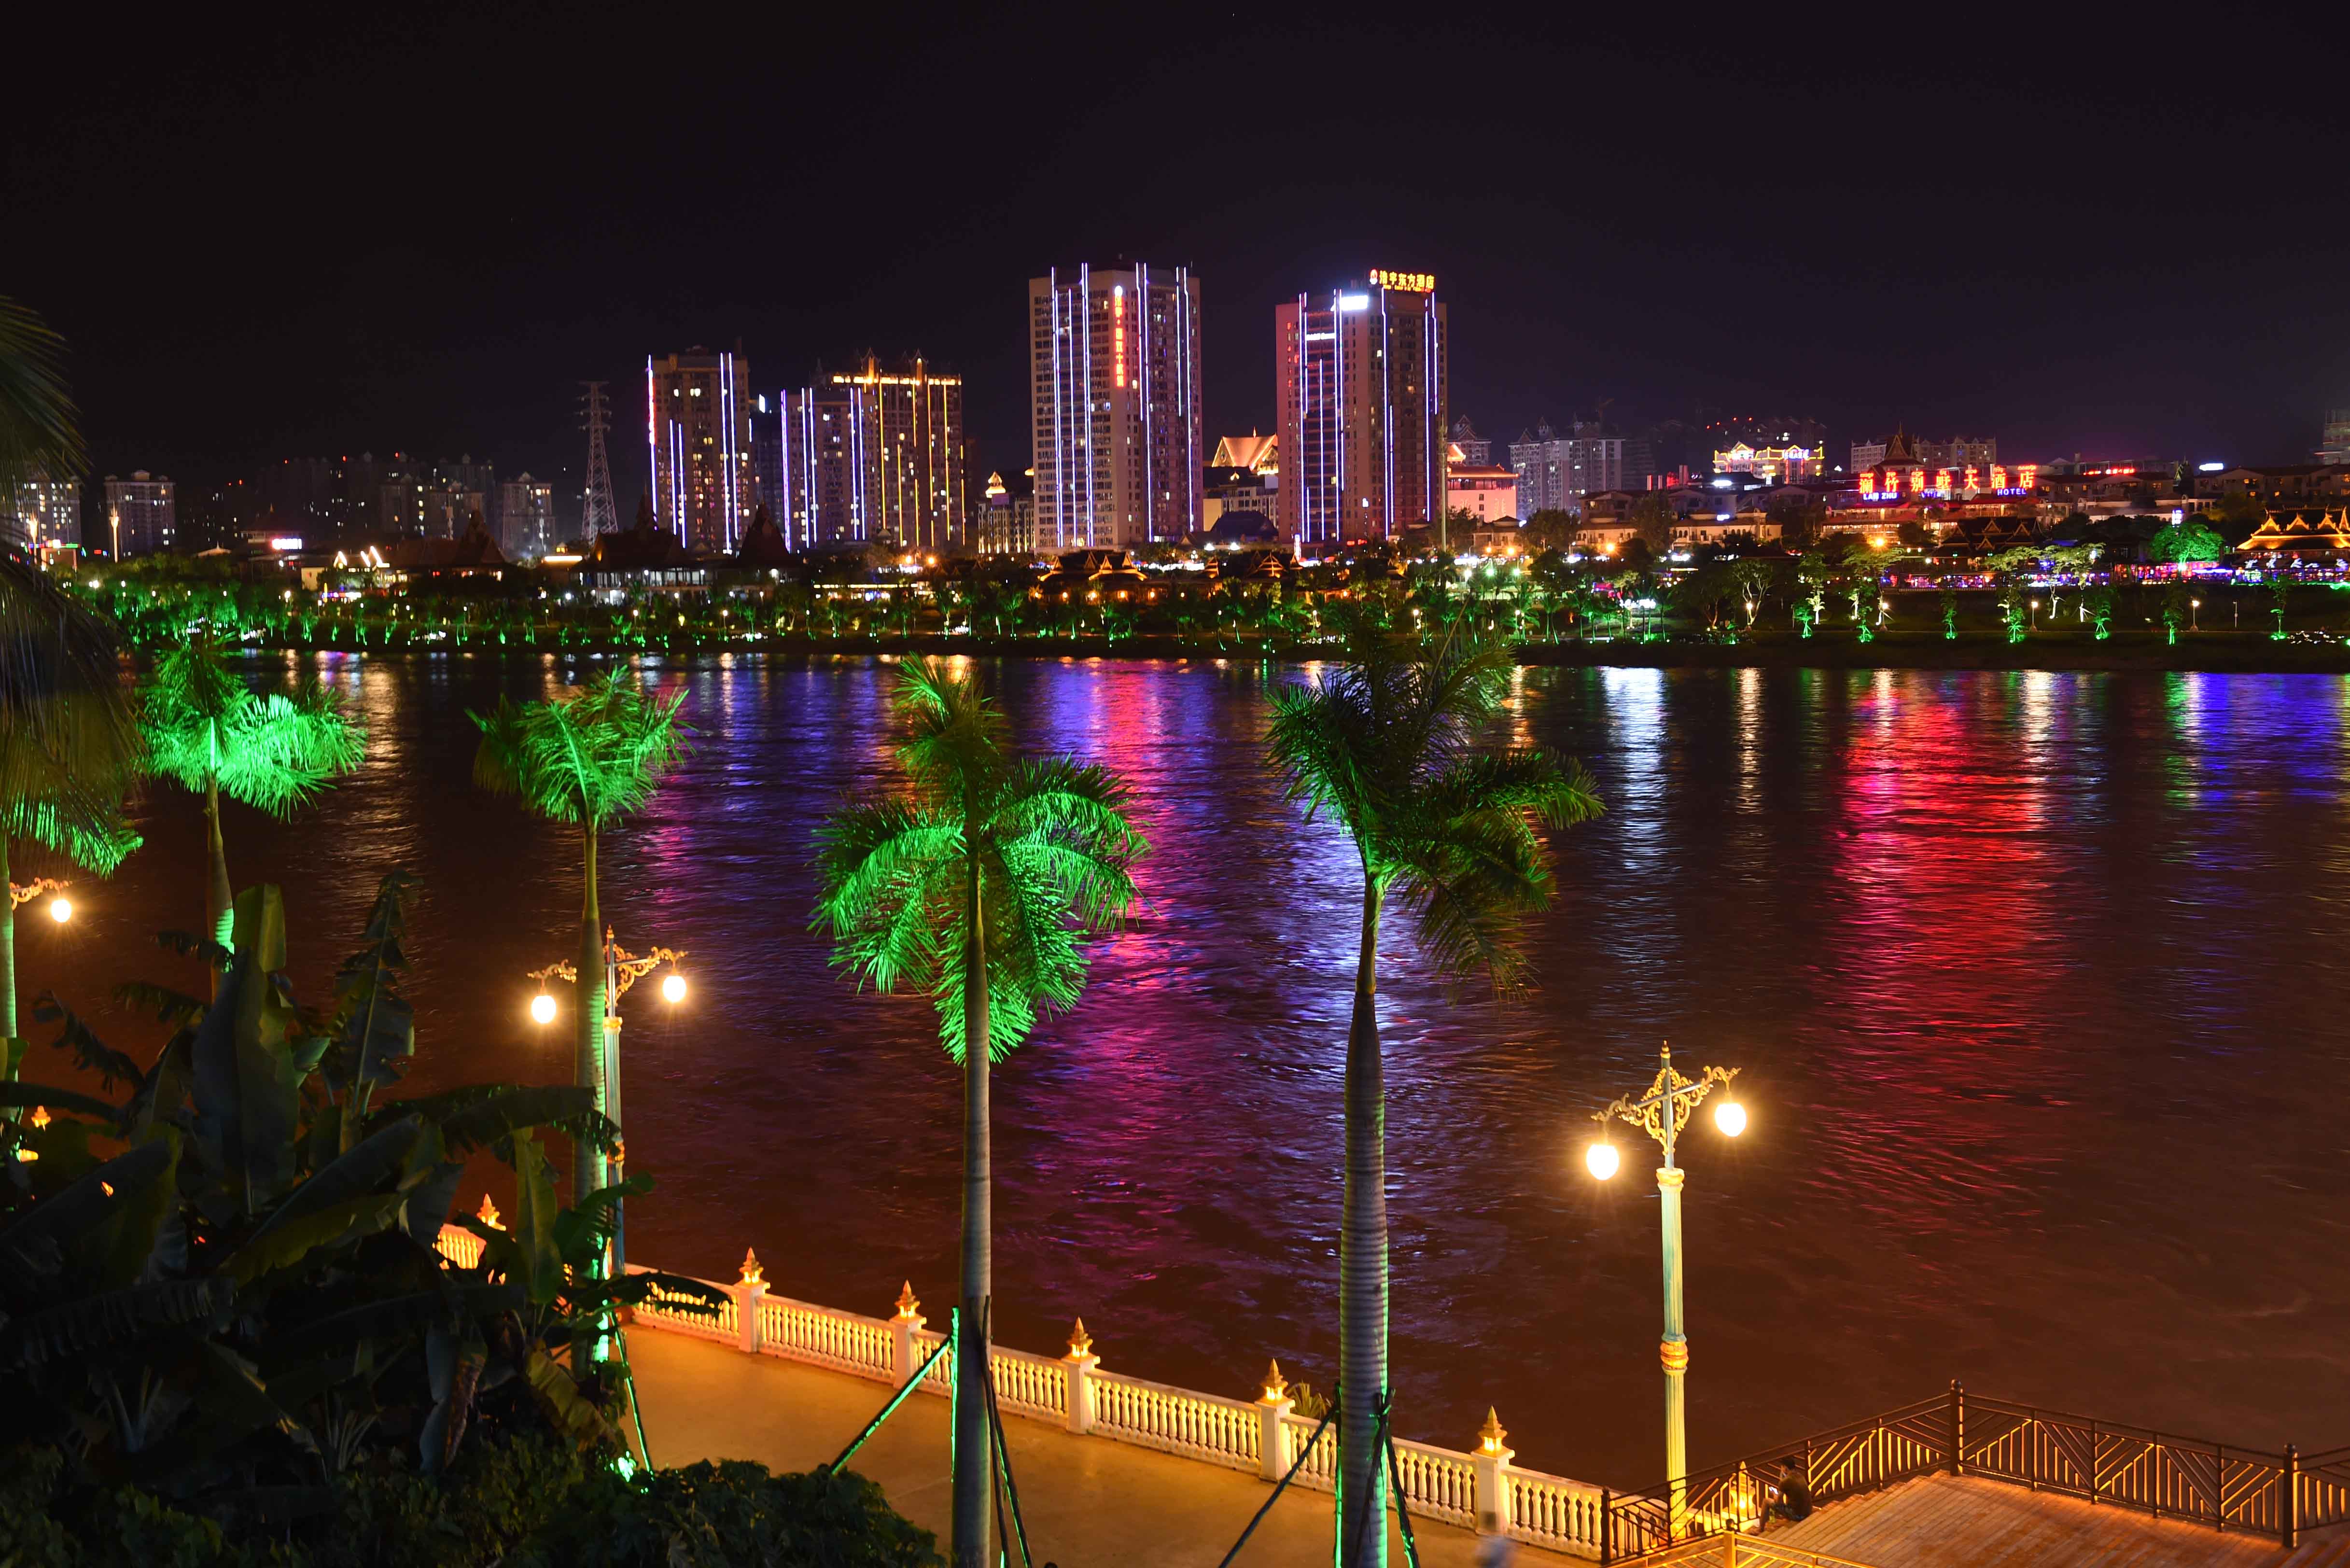 这是景洪市内澜沧江畔的夜景(9月日摄).